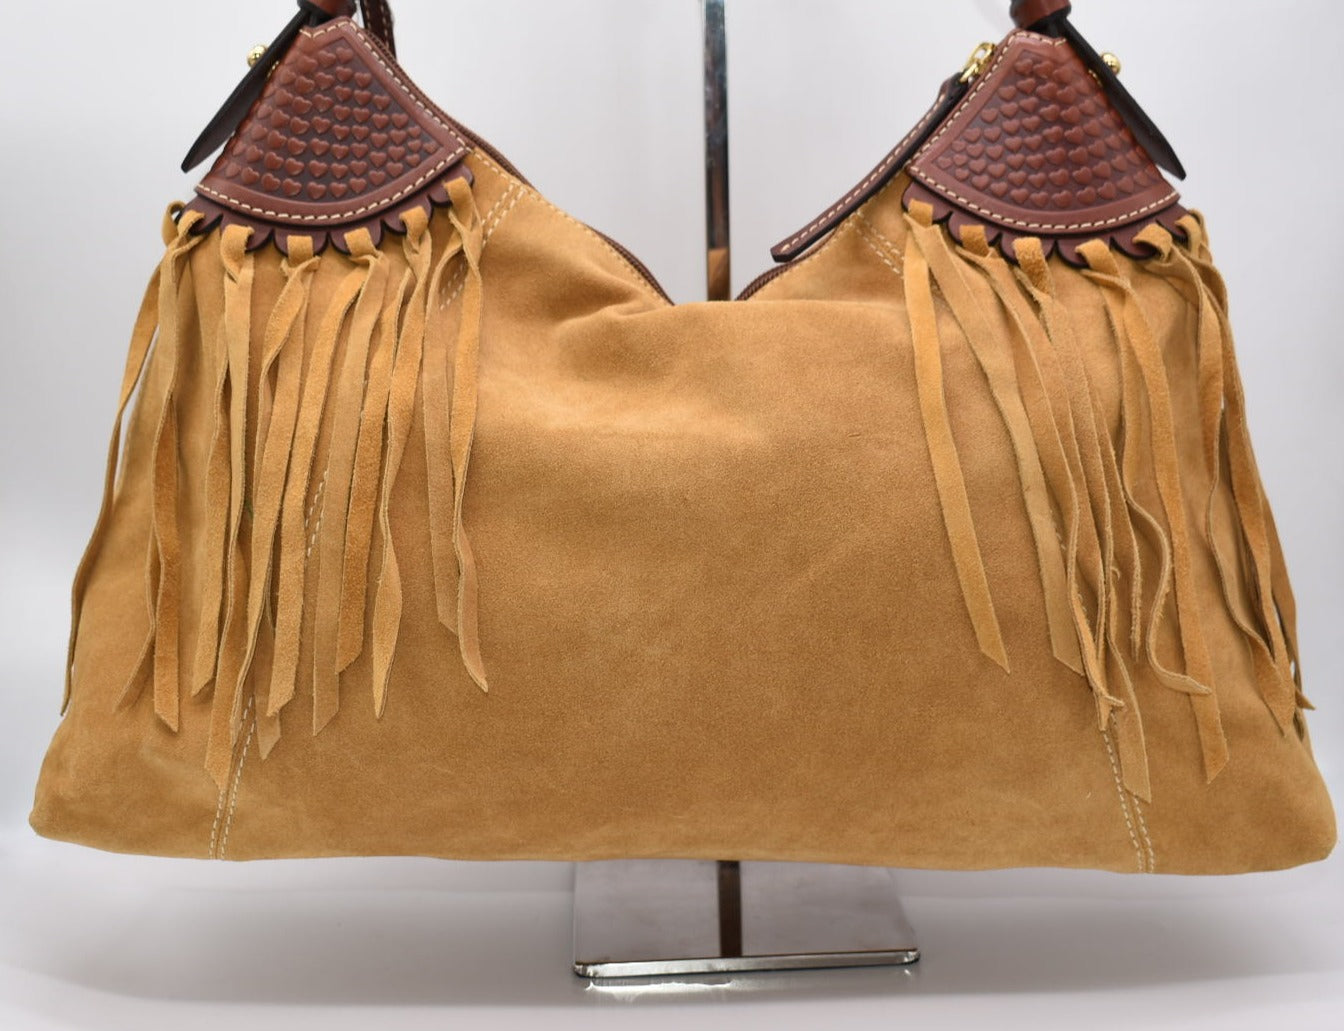 Dooney & Bourke Large East/West Slouch Suede Shoulder Bag with Fringe in Camel